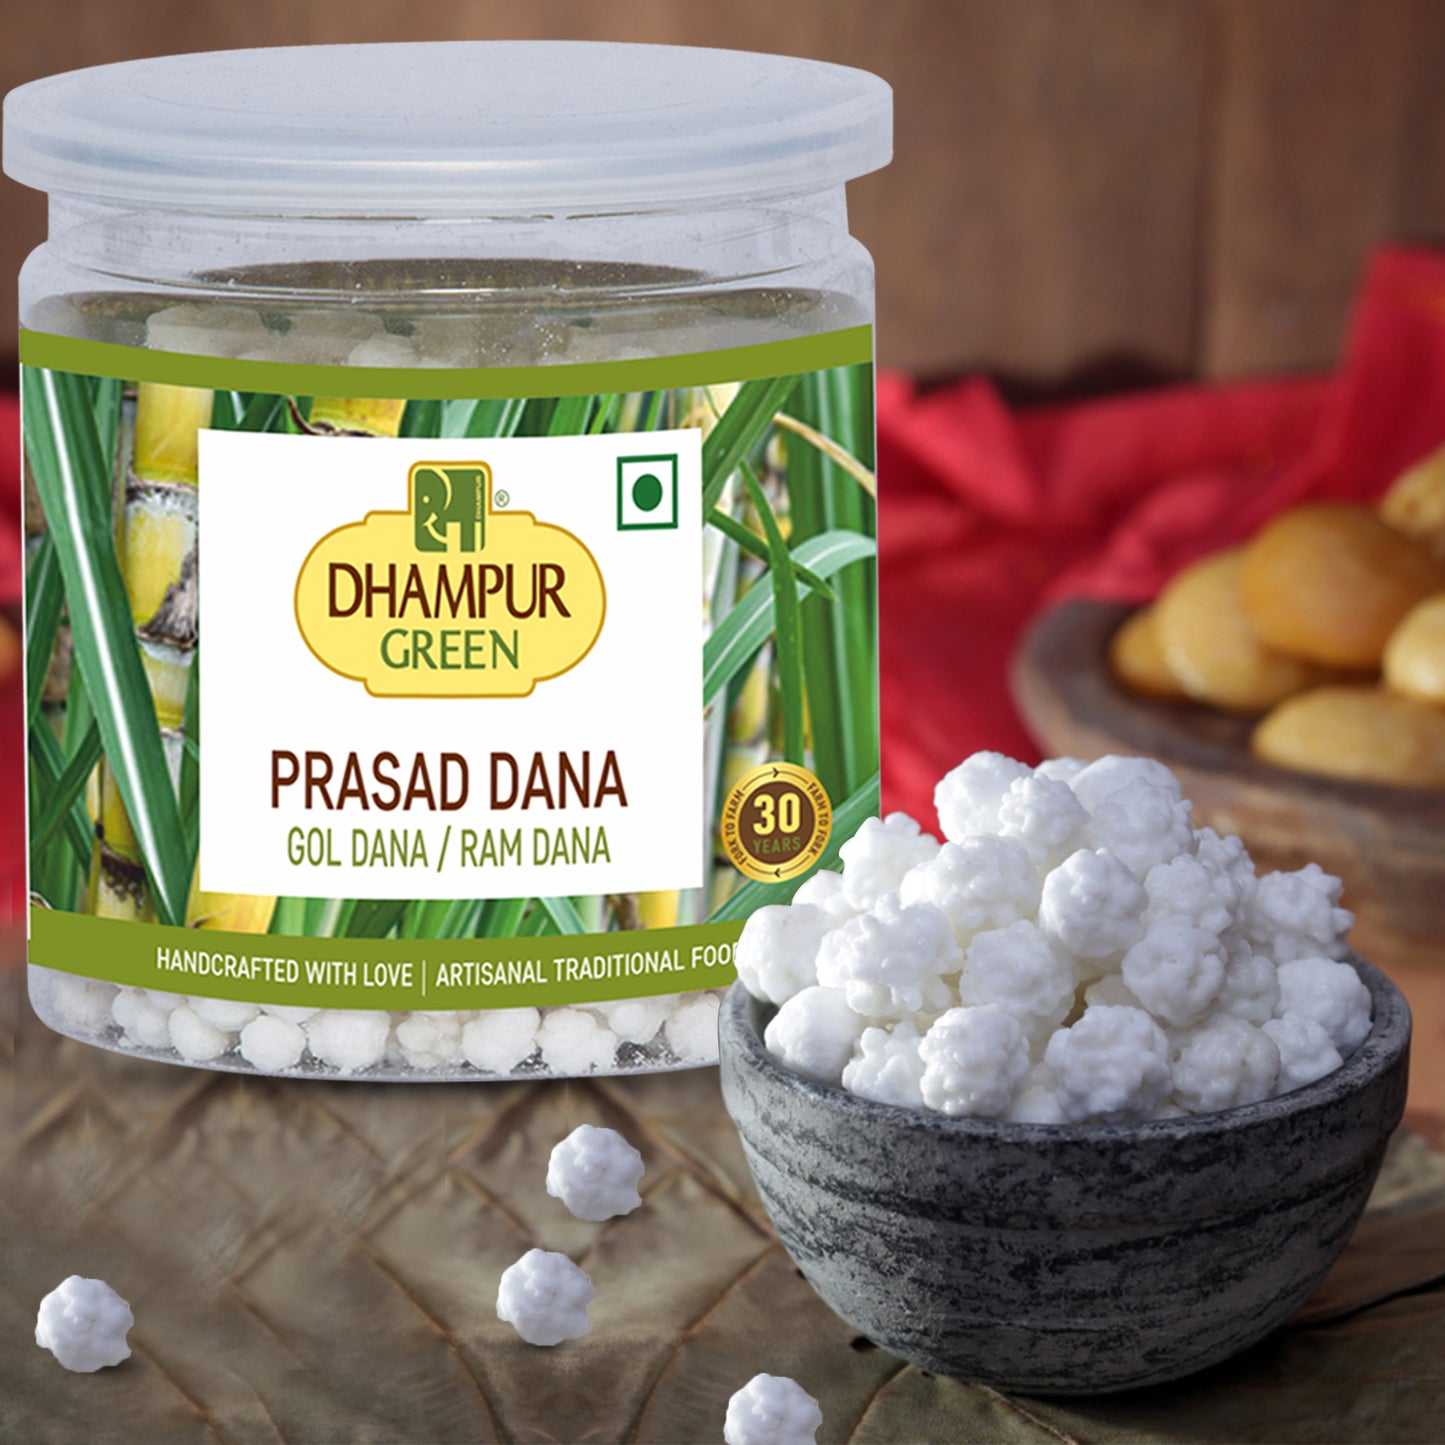 
                  
                    Dhampur Green Spice-Infused Prasad Treasures Combo: Indian Batasha and Prasad dana- 1.15kg
                  
                